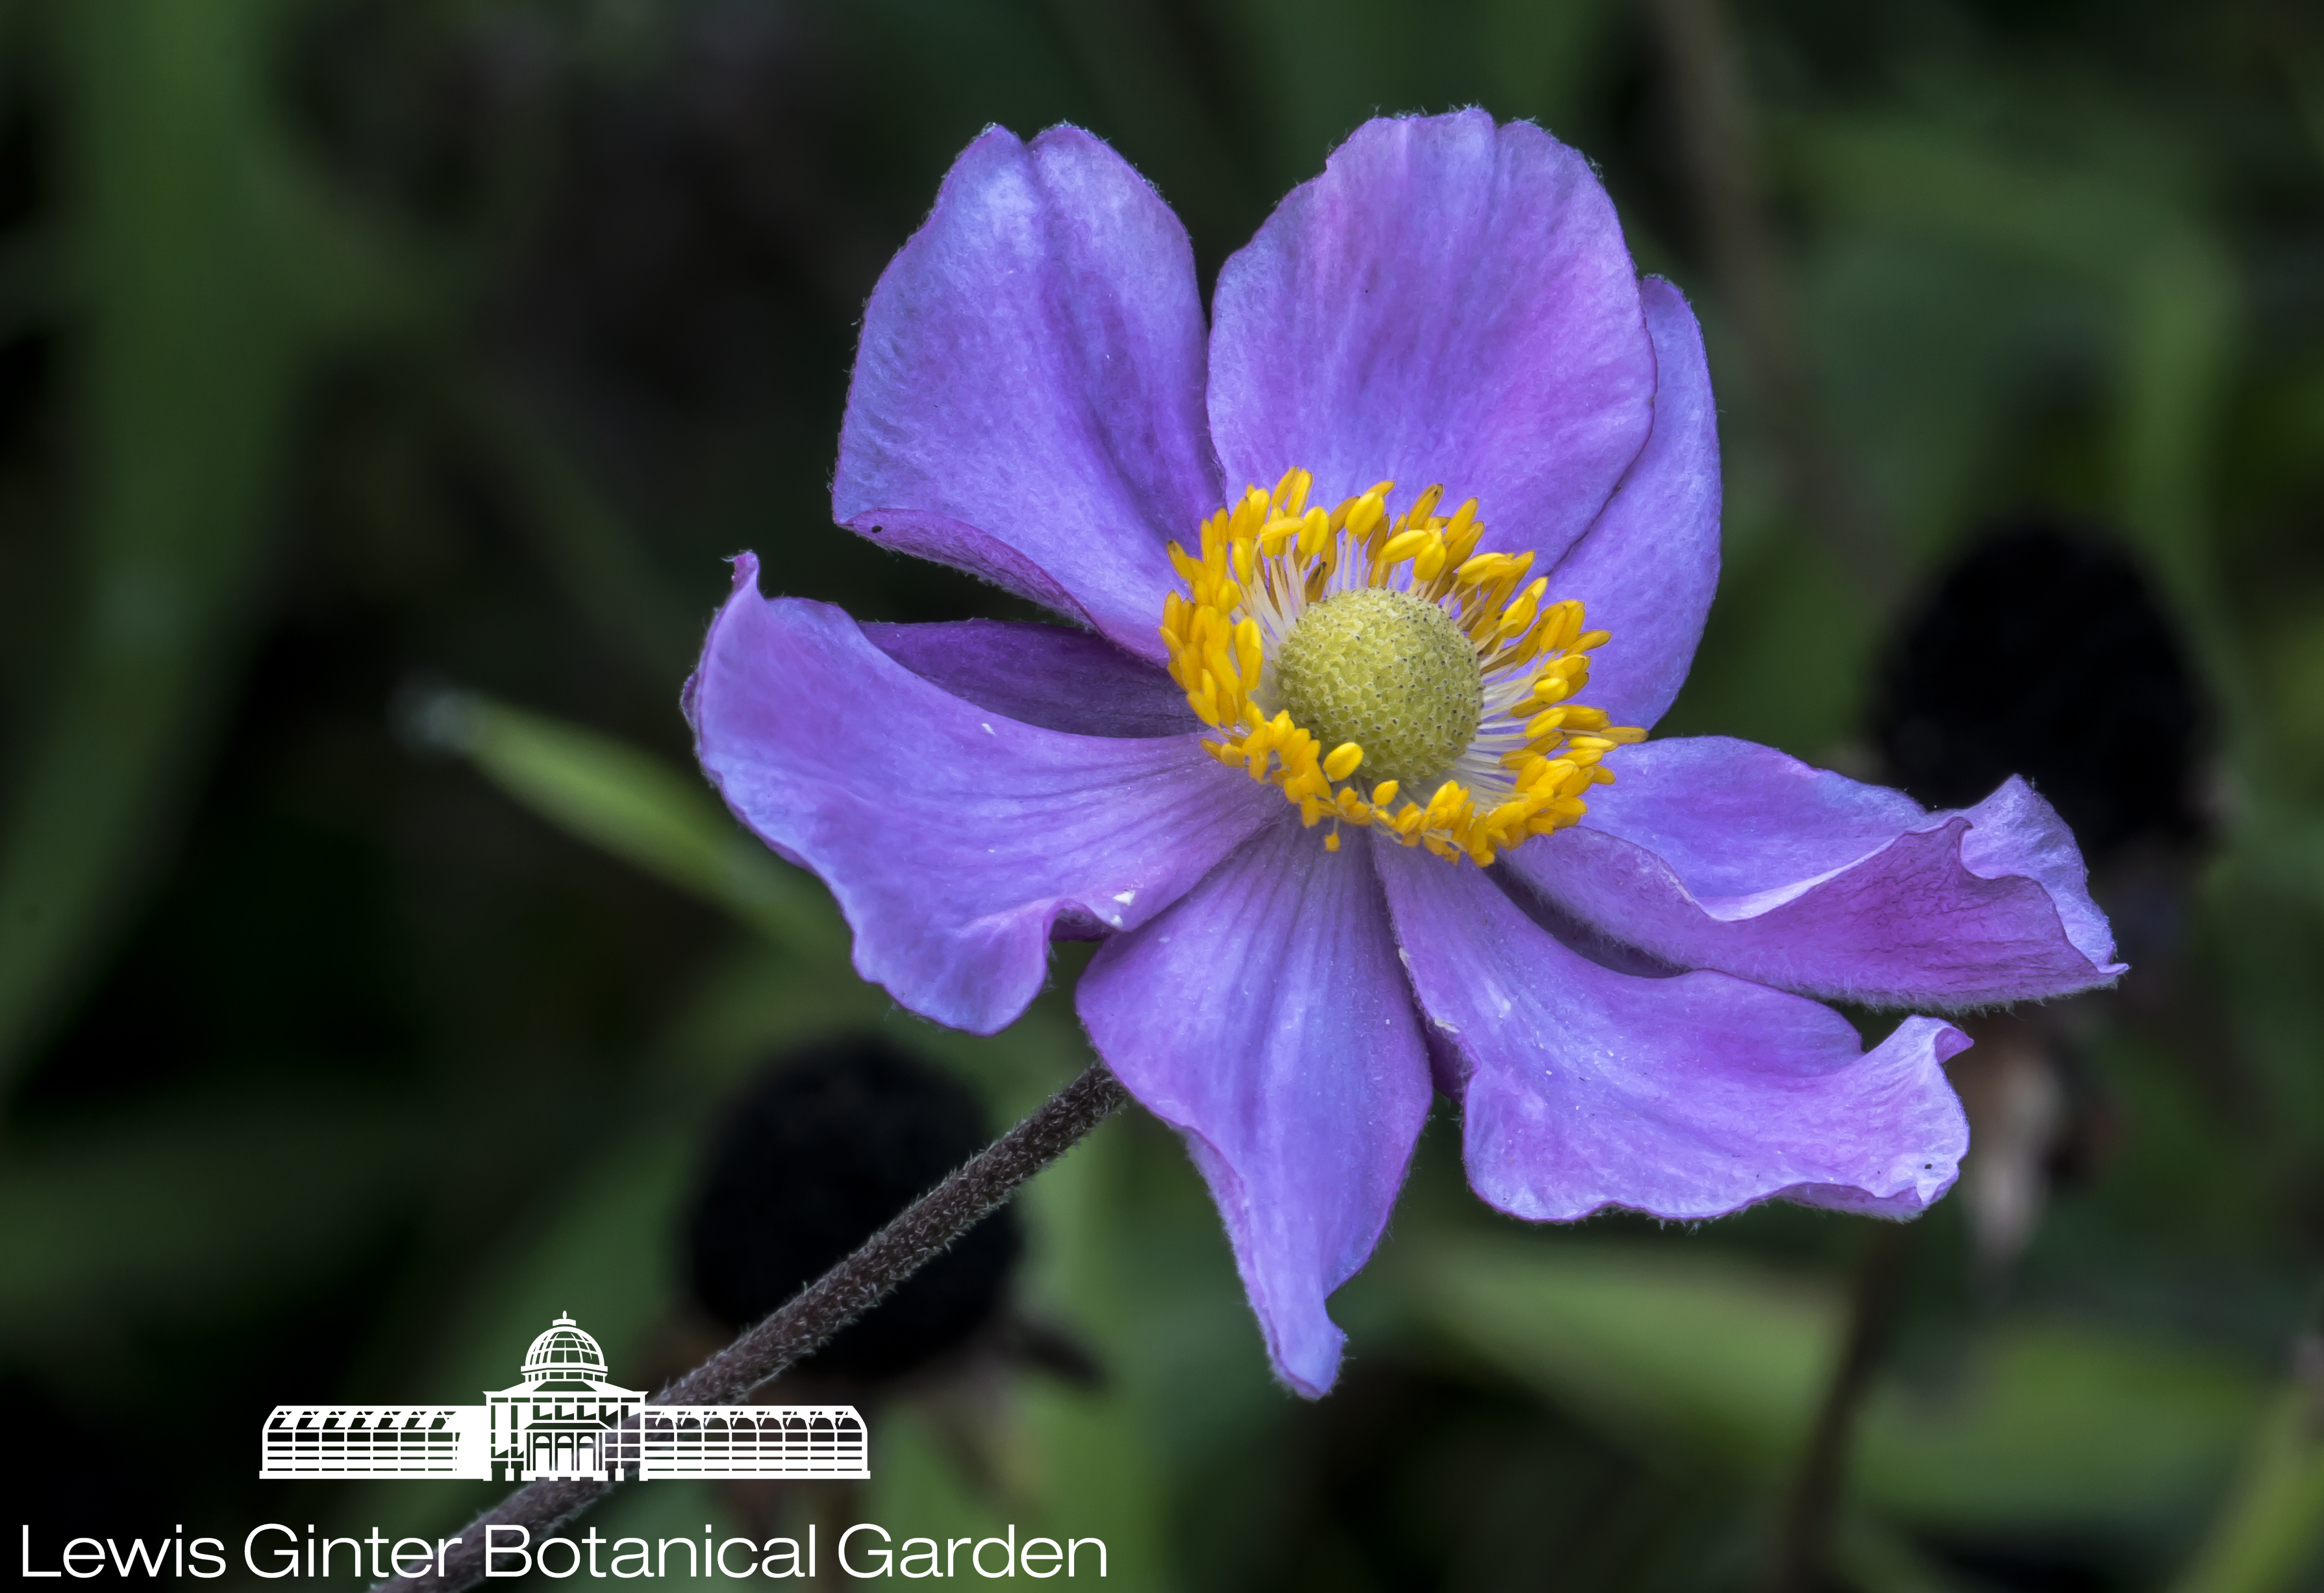 Windflower; Anemone - Lewis Ginter Botanical Garden